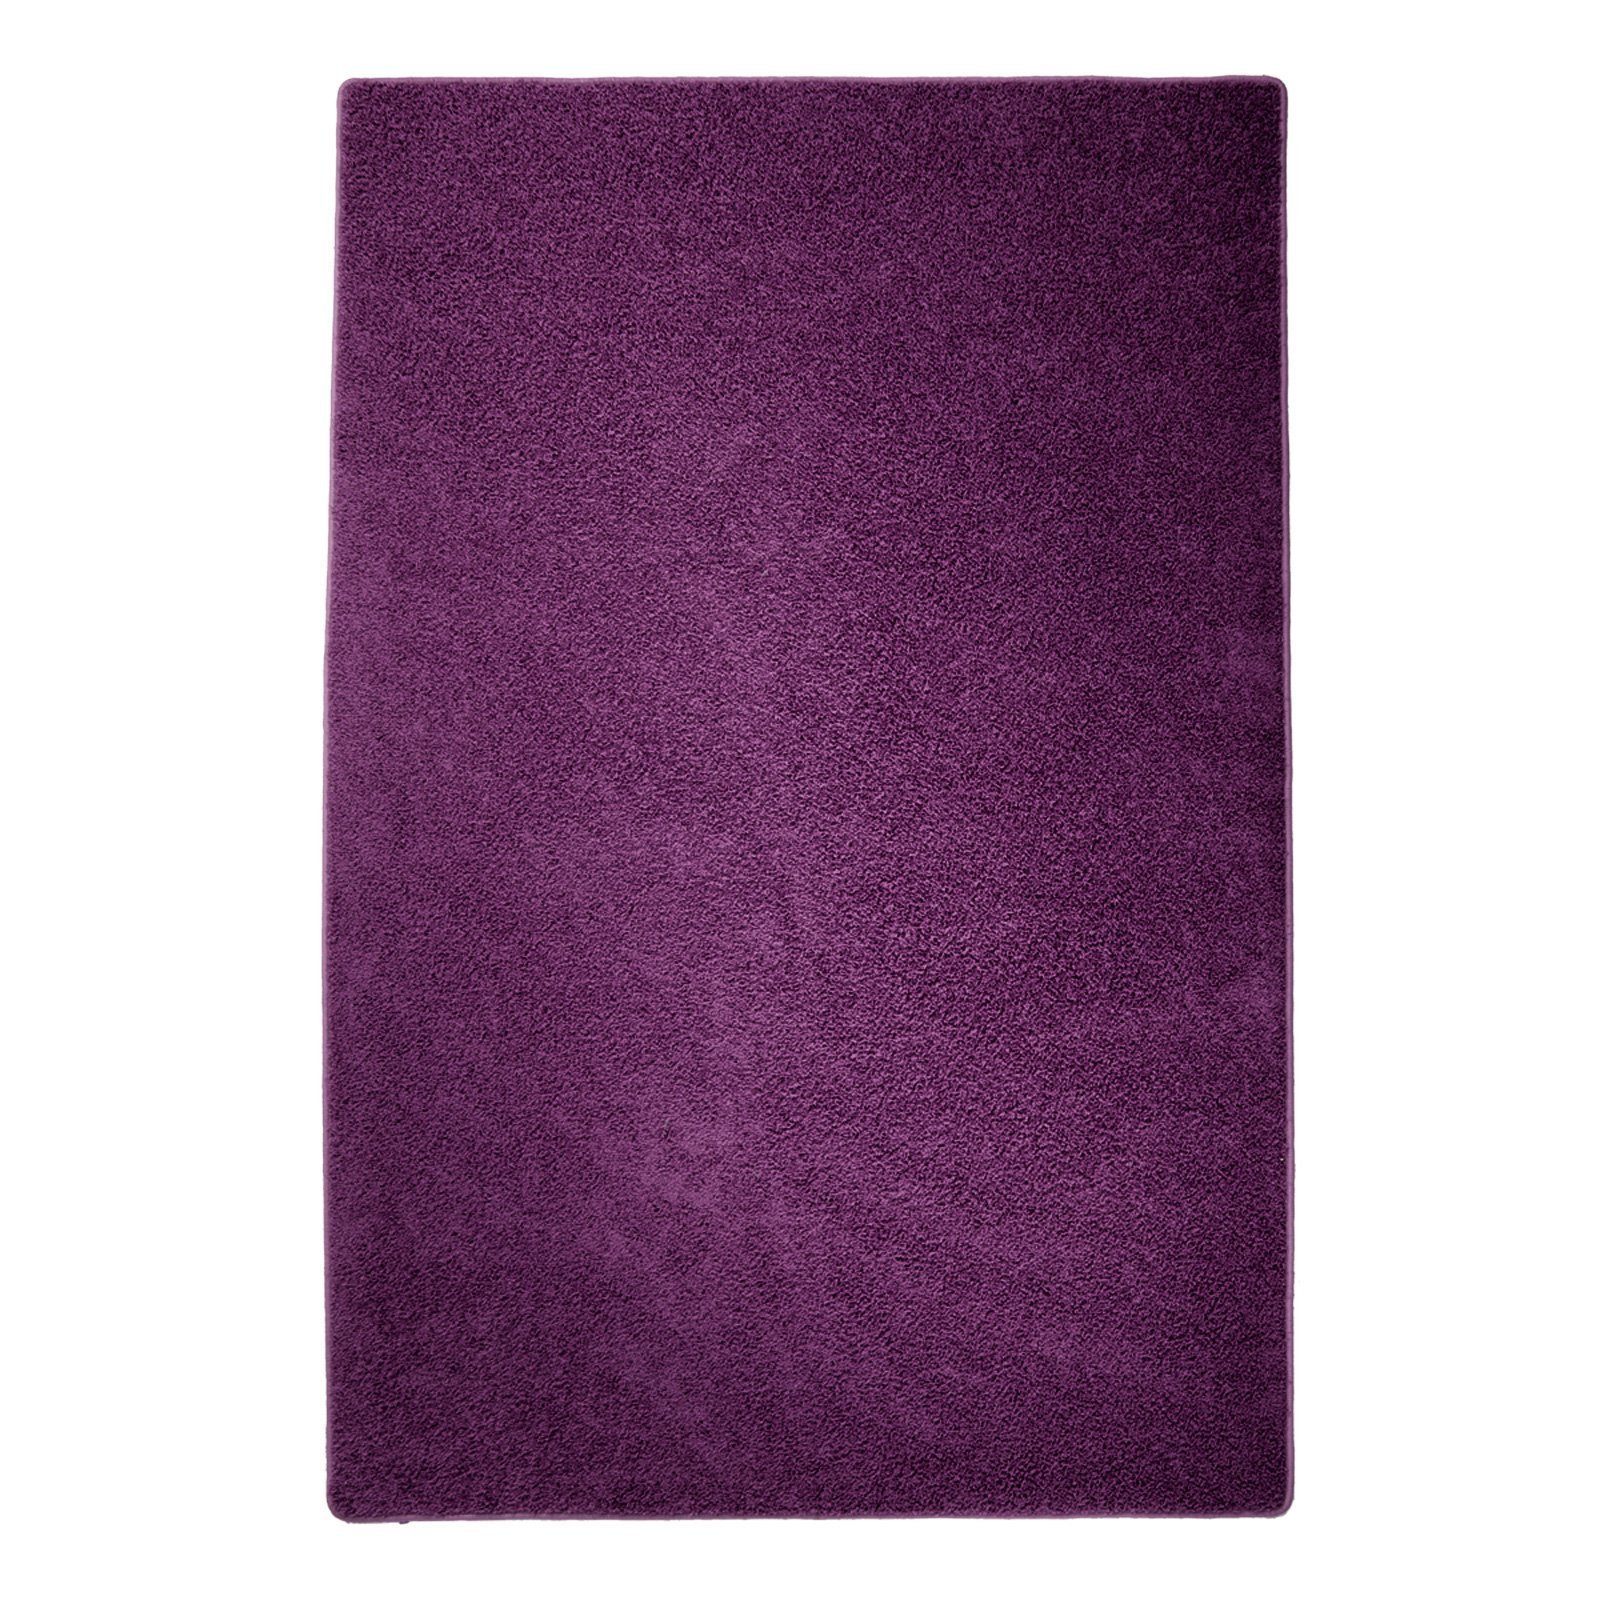 Hochflor-Teppich Shaggy, Erhältlich in 10 Farben & 4 Größen, Teppich, Teppichläufer, Floordirekt, rechteckig